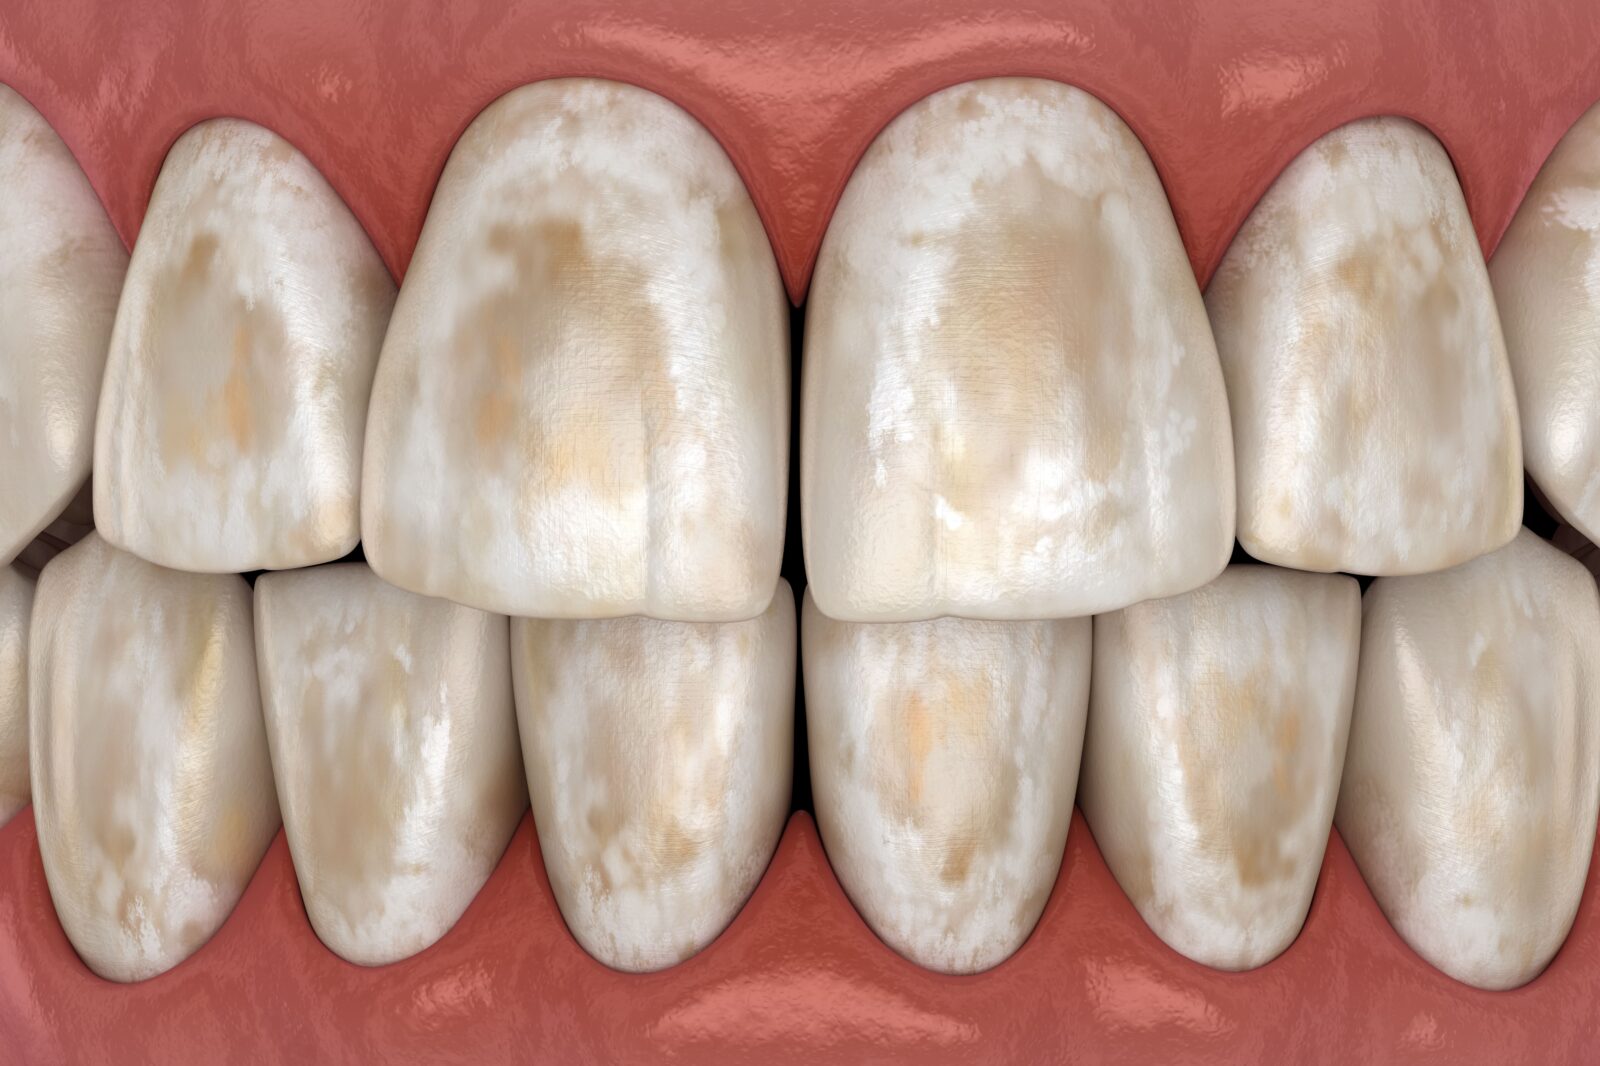 worn down tooth enamel